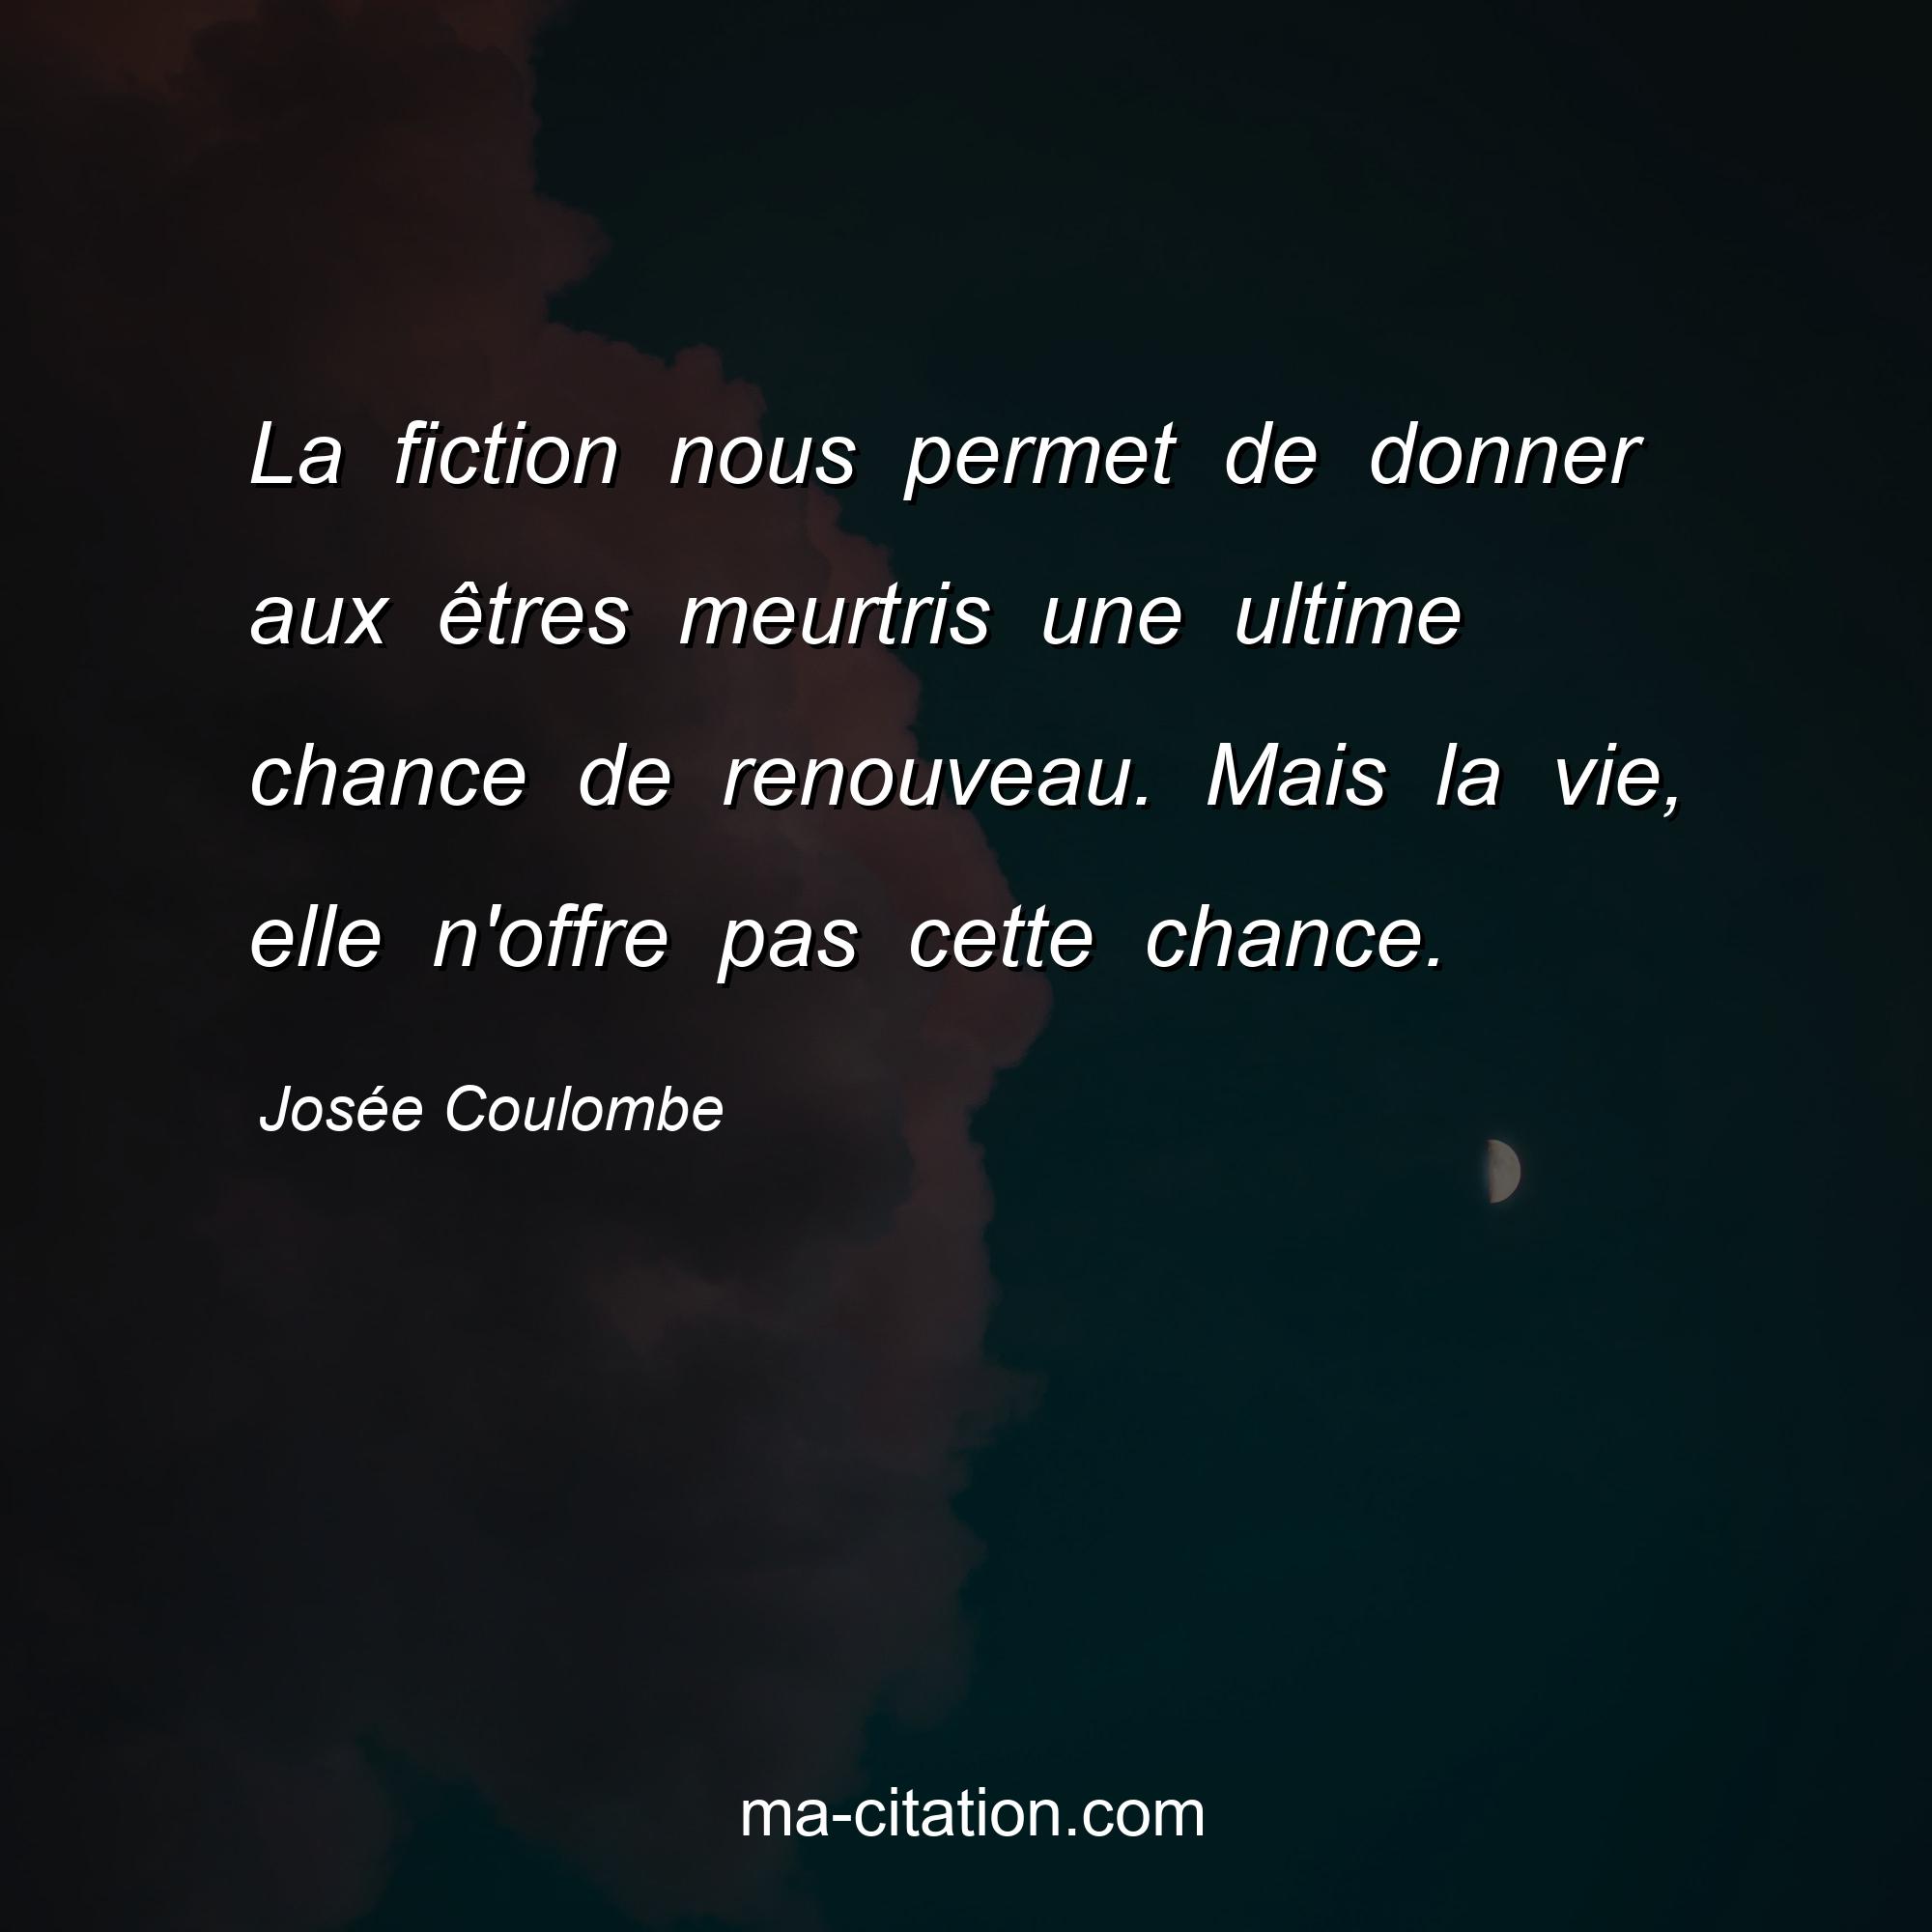 Josée Coulombe : La fiction nous permet de donner aux êtres meurtris une ultime chance de renouveau. Mais la vie, elle n'offre pas cette chance.